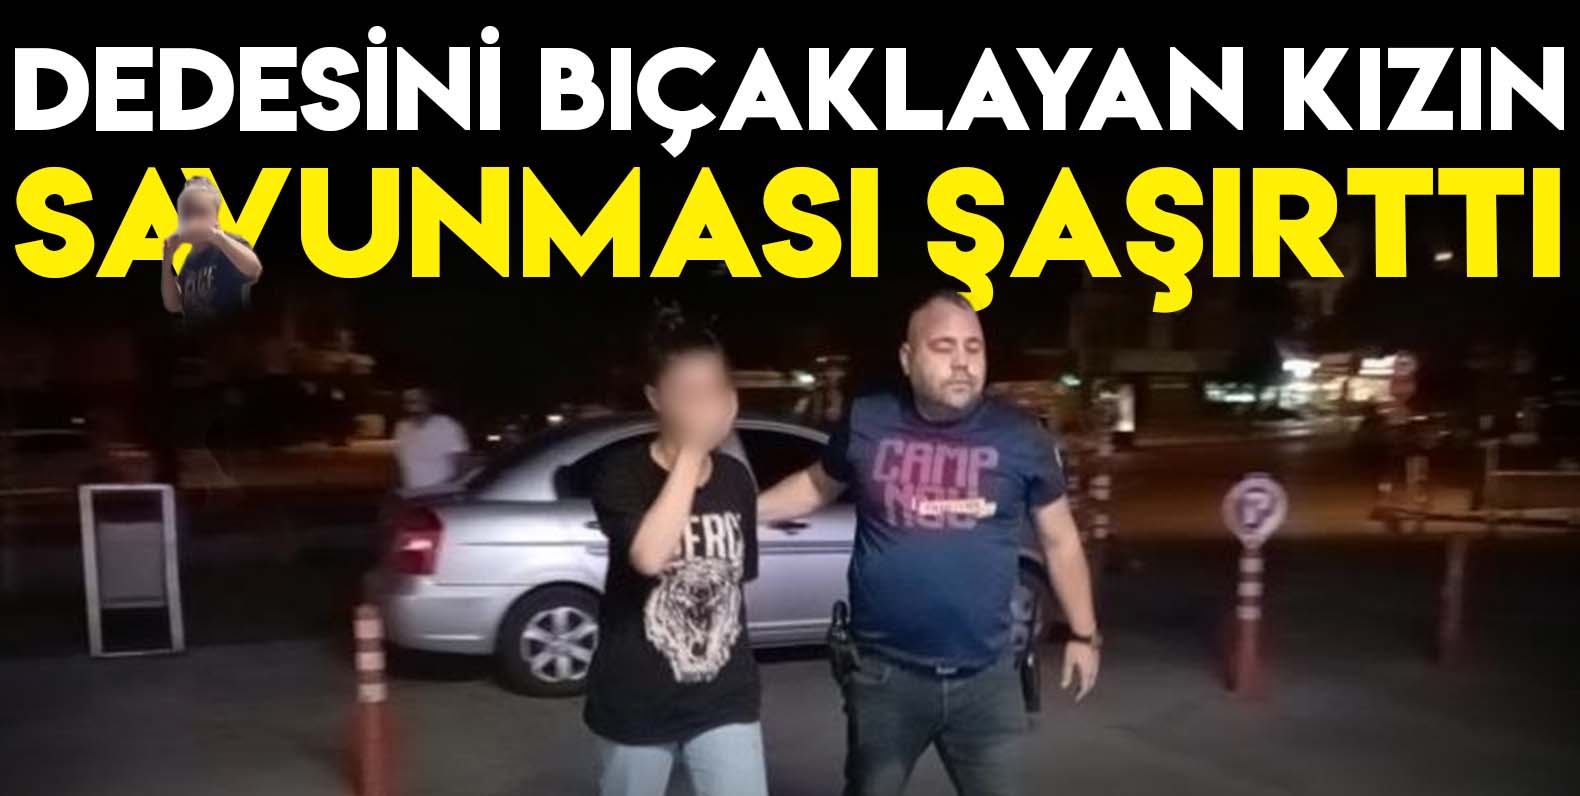 Konya'da 14 yaşındaki kız dedesini bıçakladı!  Savunması şaşırttı